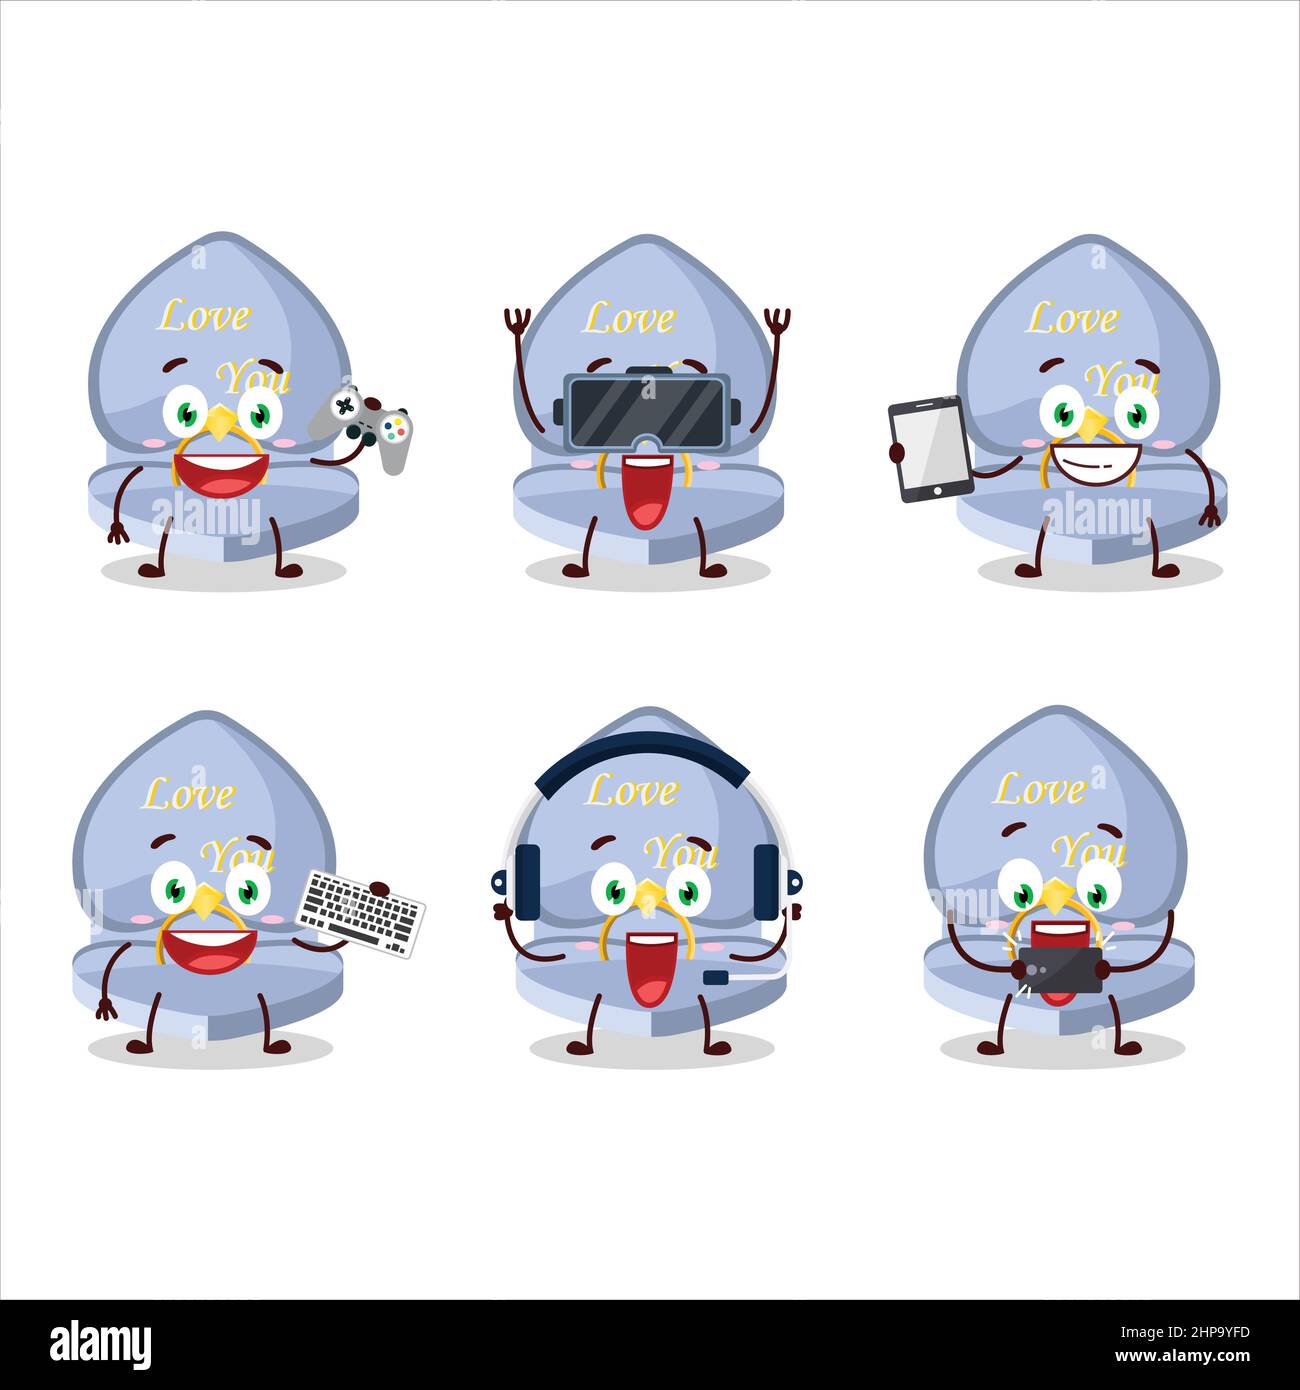 Le personnage de dessin animé de boîte de bague d'amour bleu joue à des jeux avec diverses émoticônes mignons. Illustration vectorielle Illustration de Vecteur